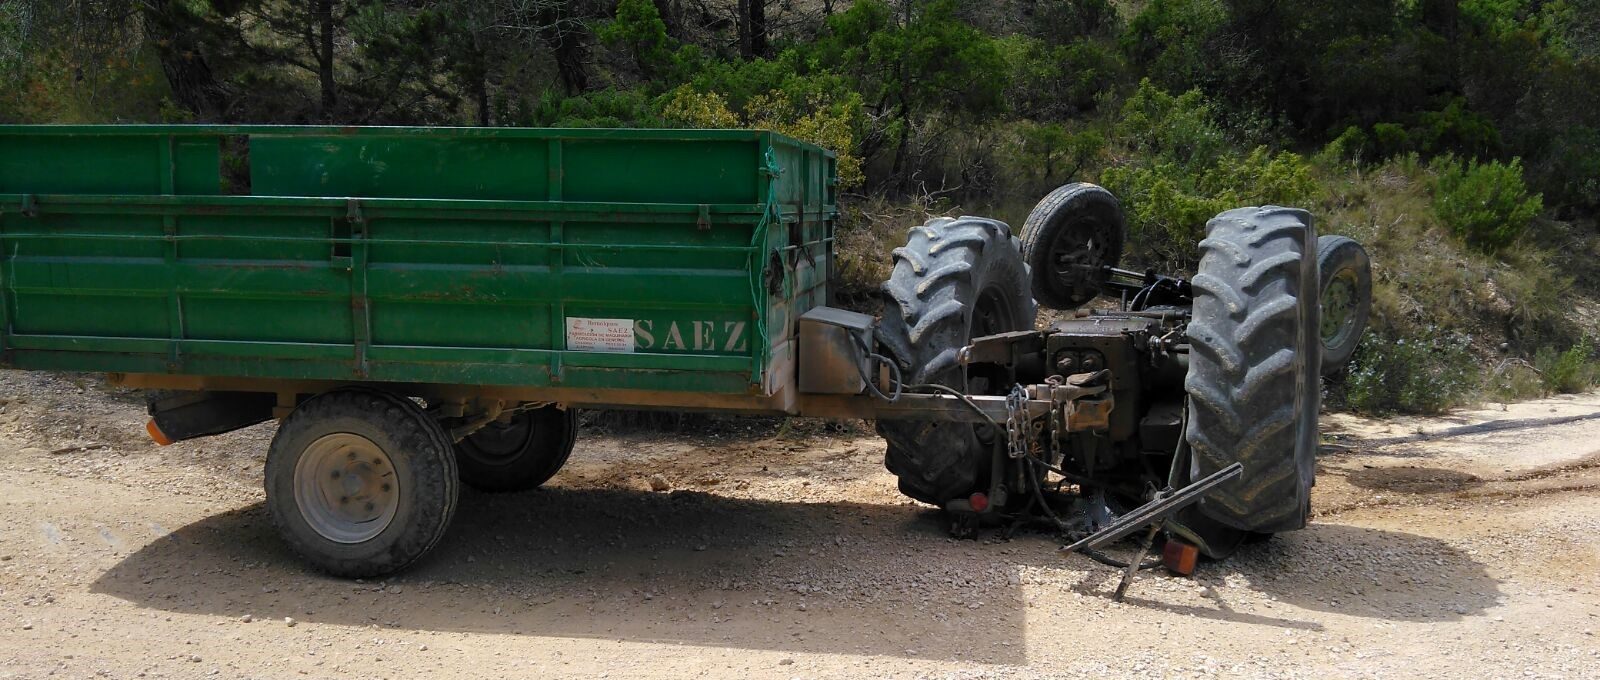 Fallece un hombre al volcar el tractor que conducía